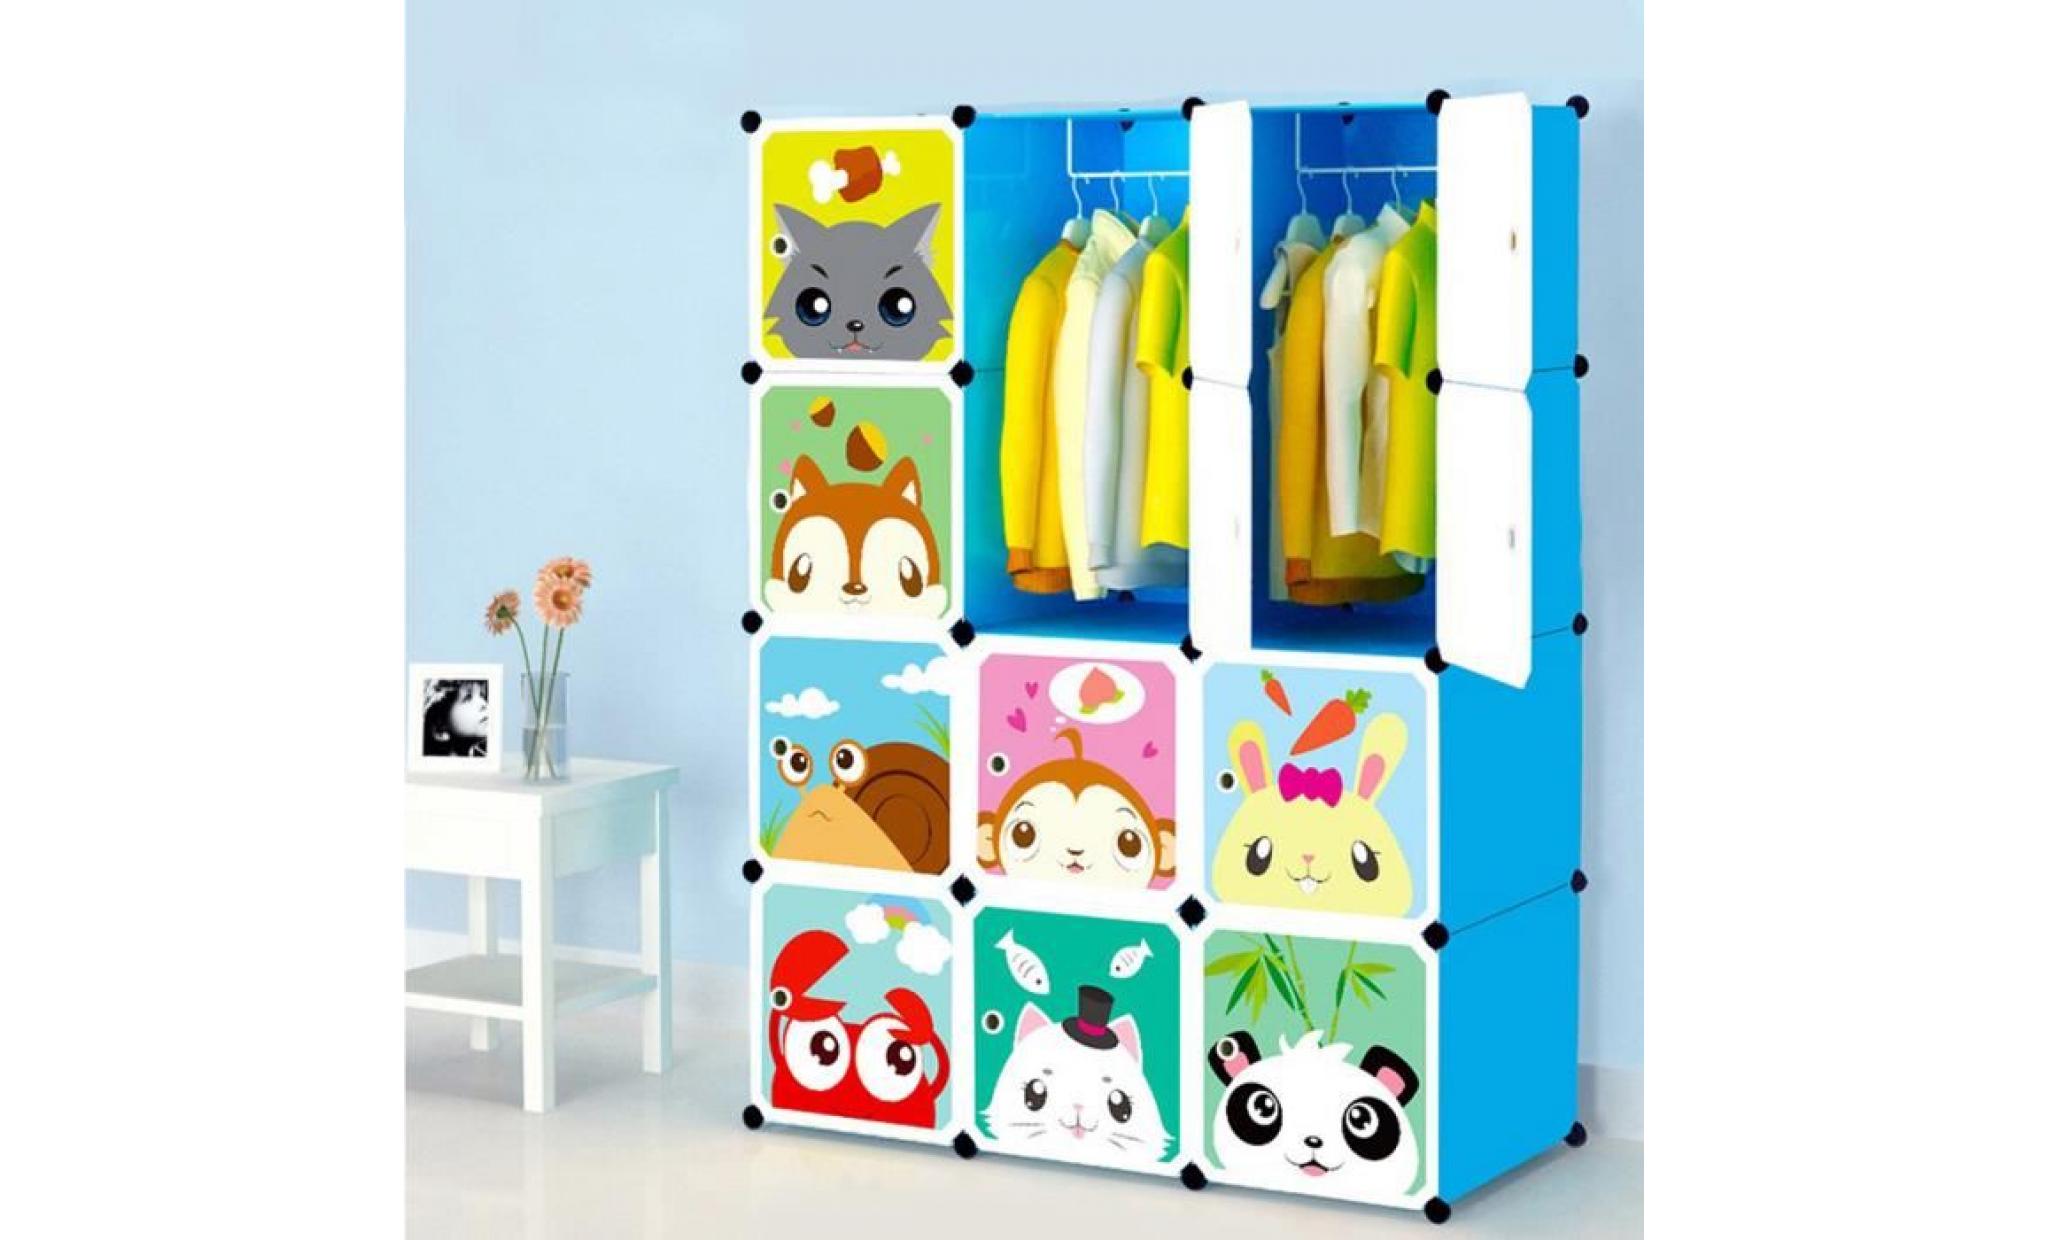 armoires etagères plastiques enfants bleu, 12 cubes armoires meubles de rangement pour vêtements chaussures jouets cartoon